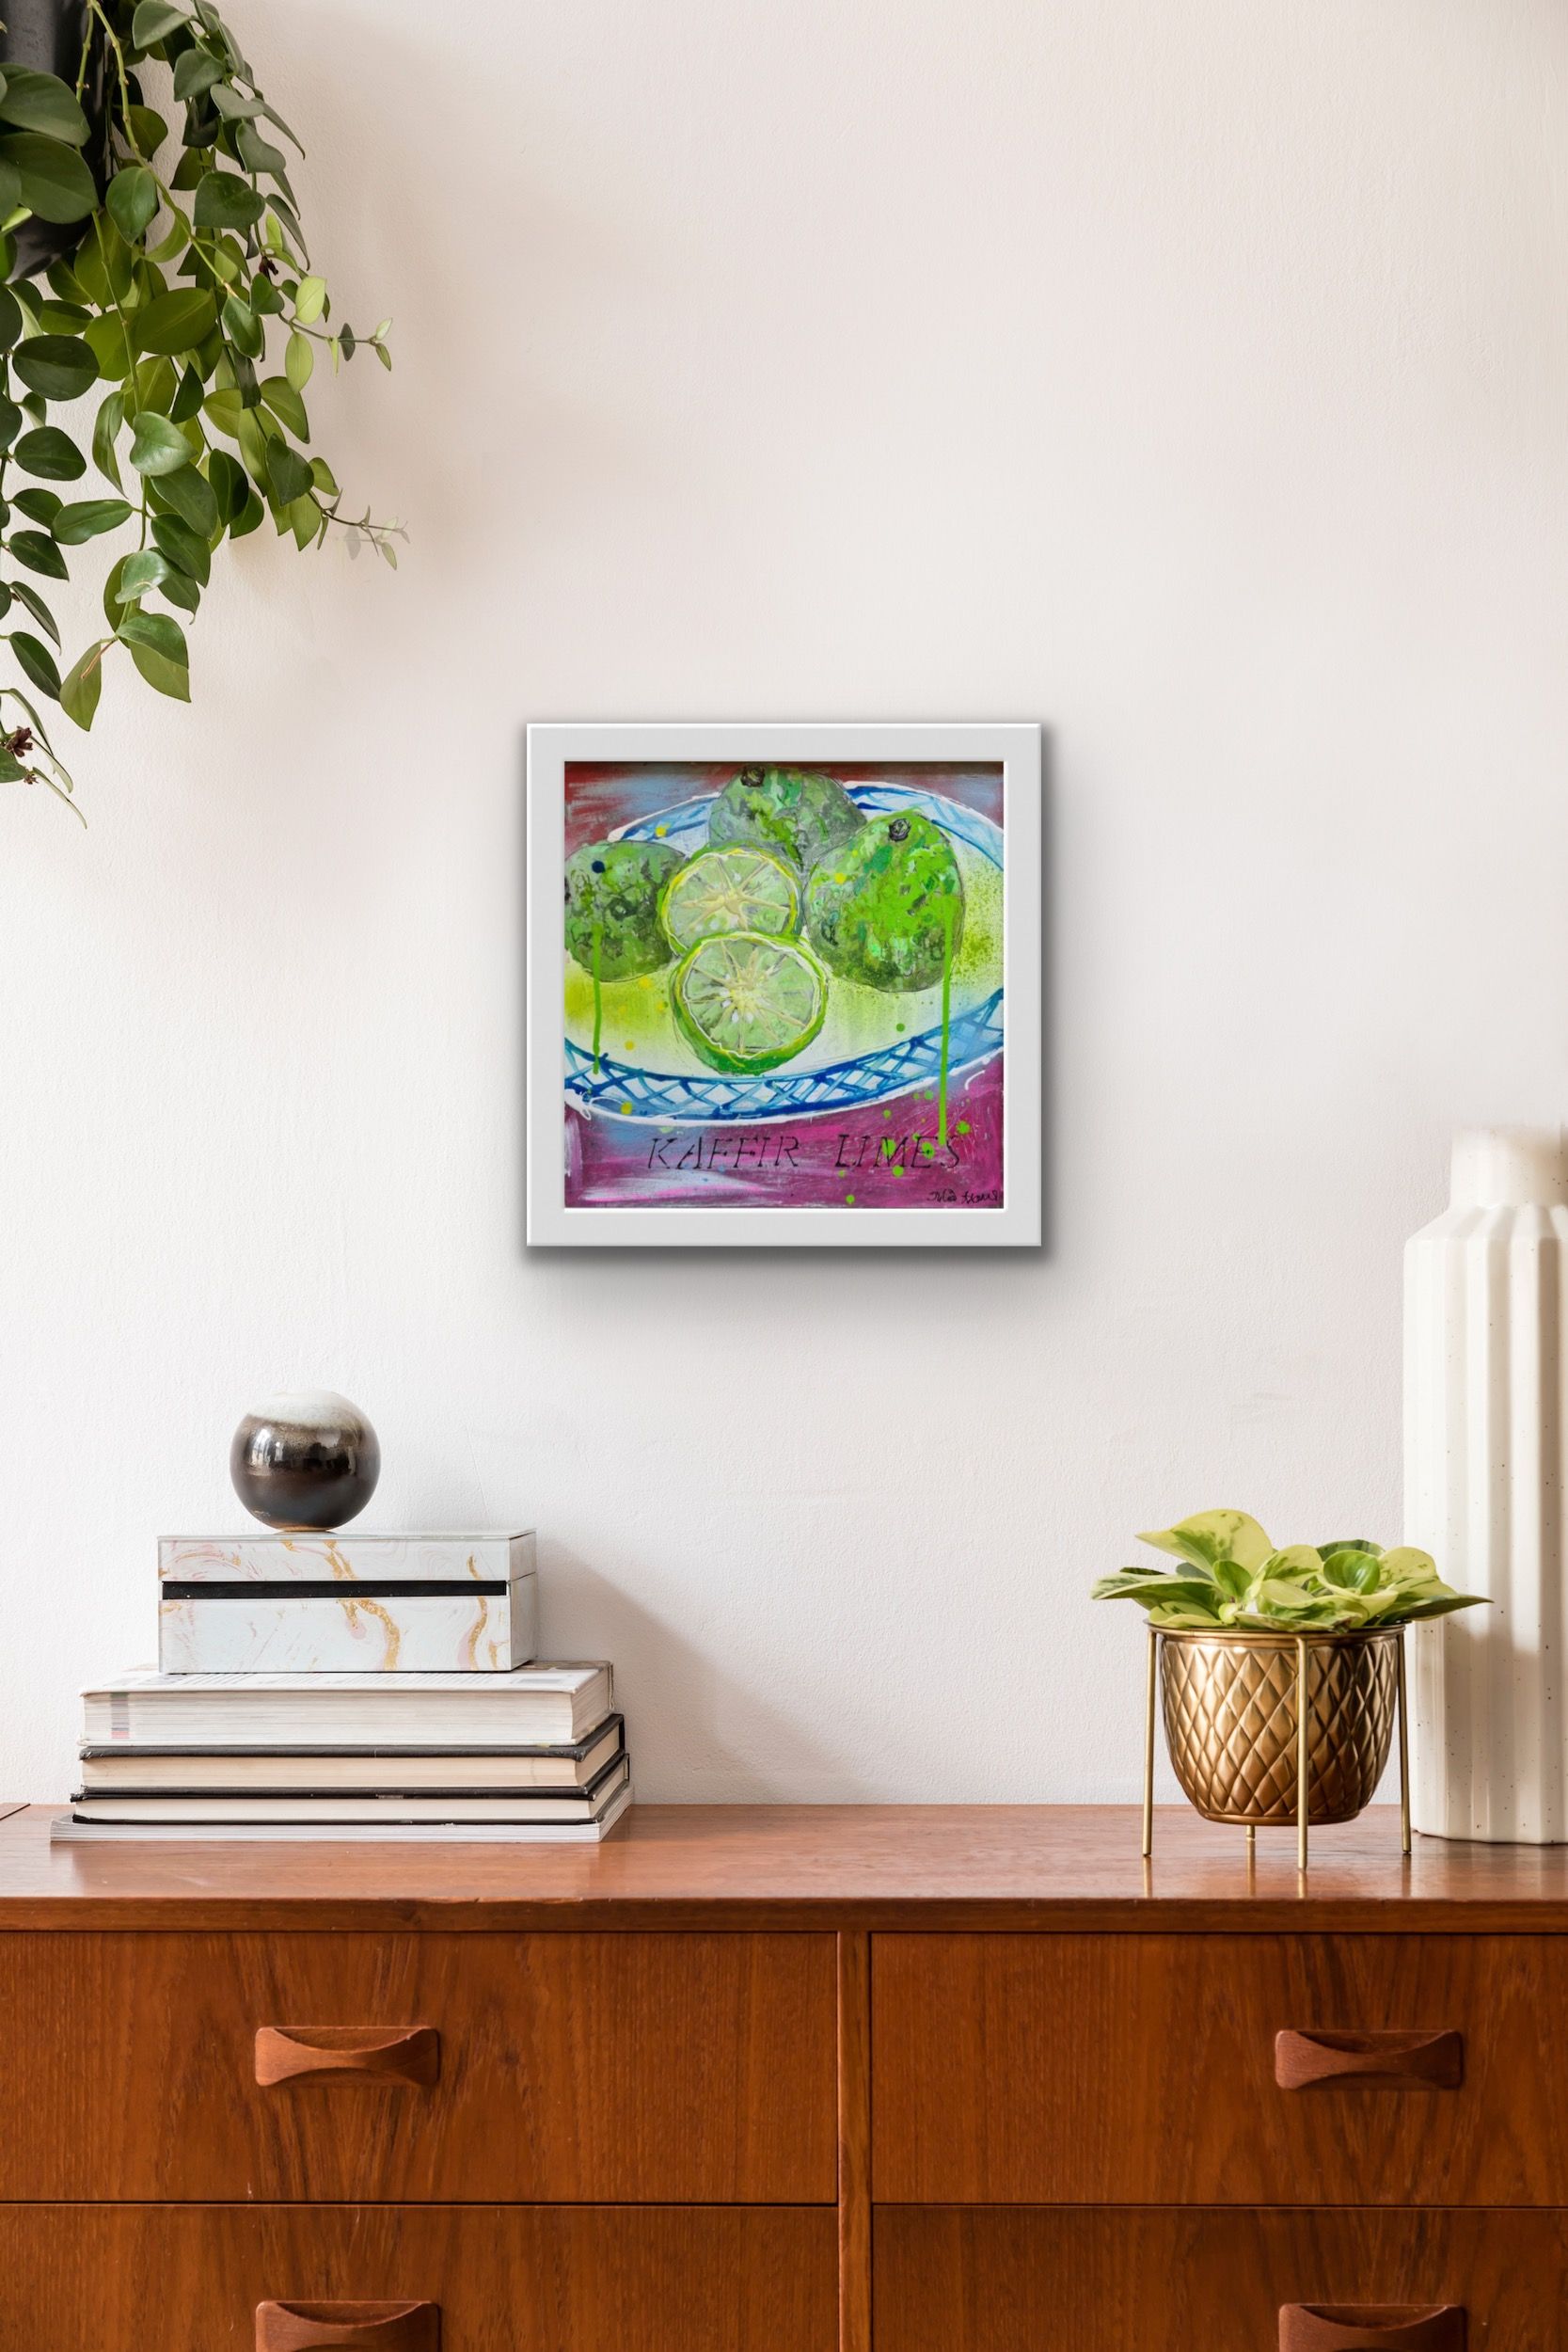 Kaffir Limes by Julia Adams - Secondary Image